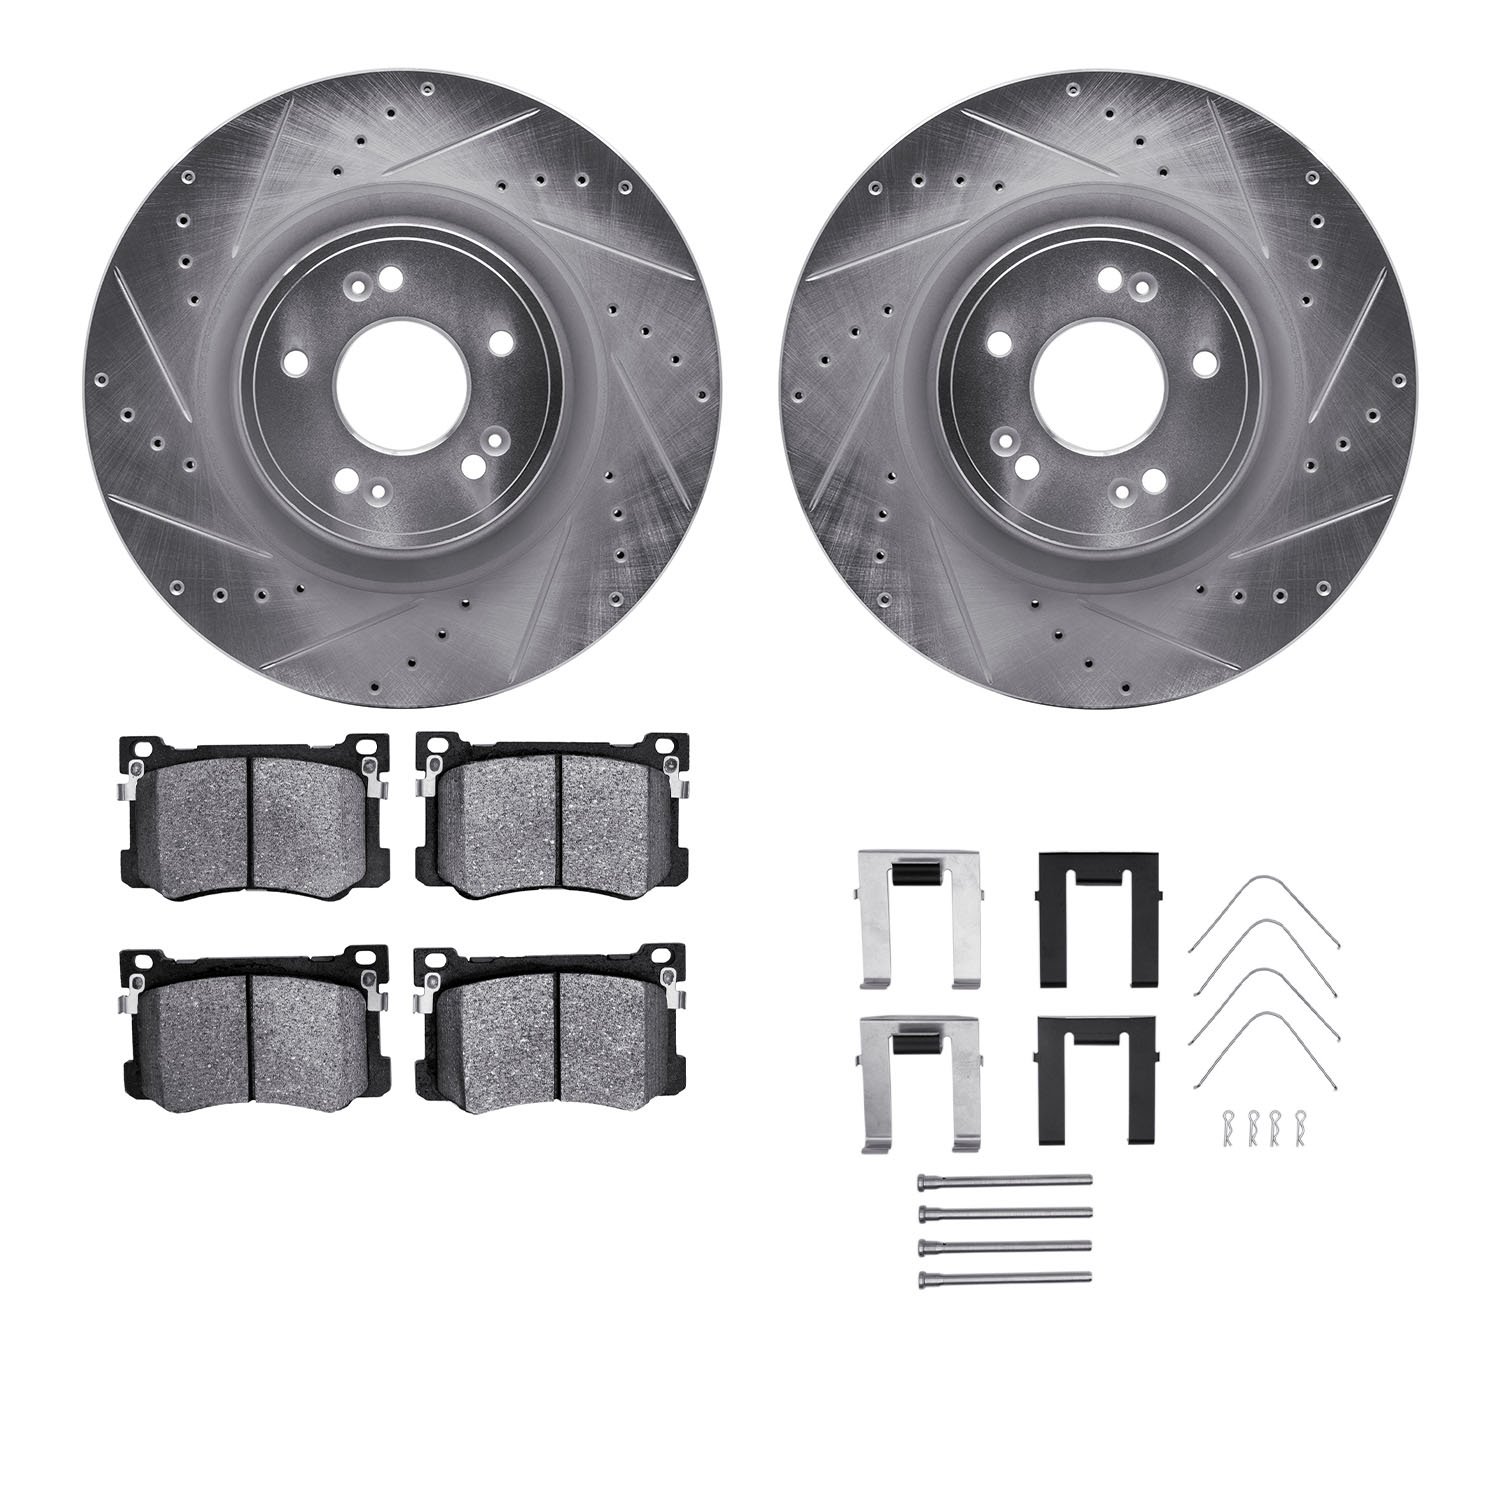 7312-03105 Drilled/Slotted Brake Rotor with 3000-Series Ceramic Brake Pads Kit & Hardware [Silver], 2018-2020 Kia/Hyundai/Genesi